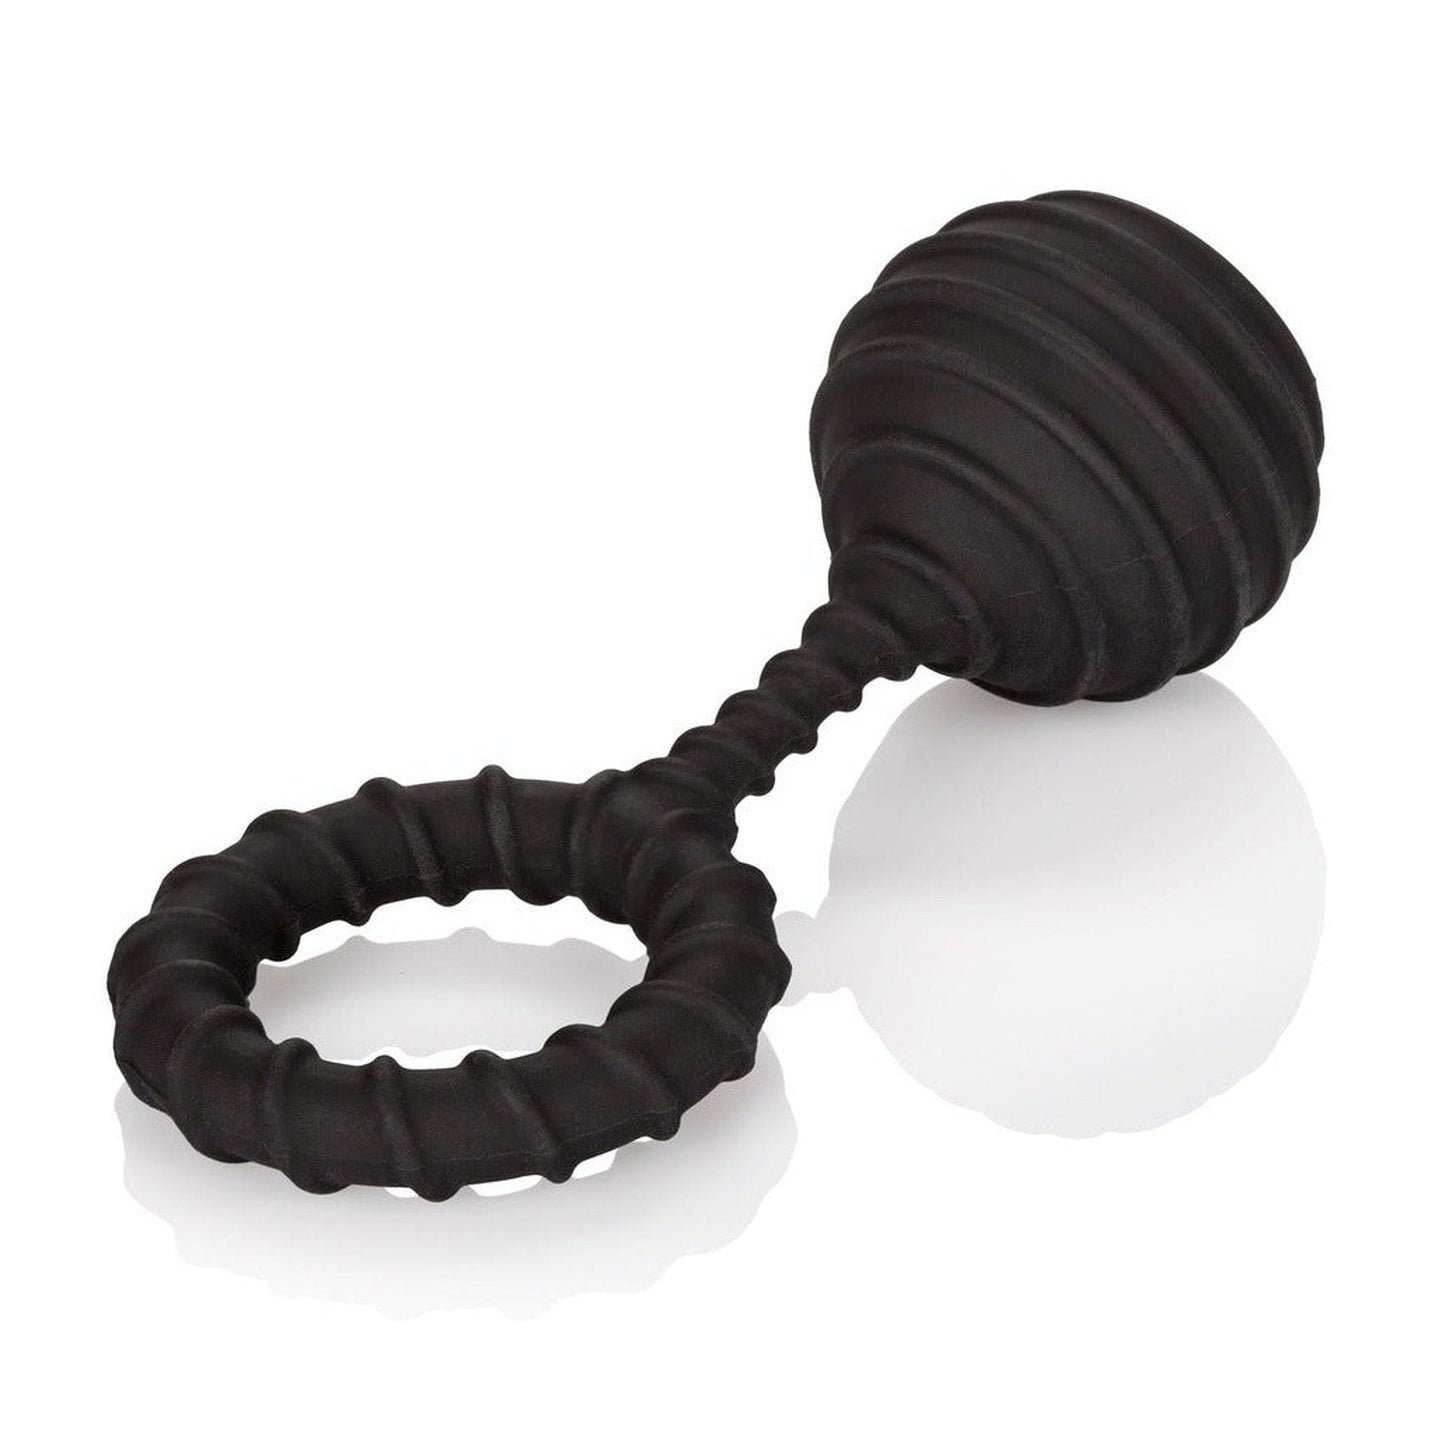 Weighted Ring Large - Anello fallico in 100% puro silicone, elastico e confortevole - Nero, Peso 110 gr. California Exotic Novelties